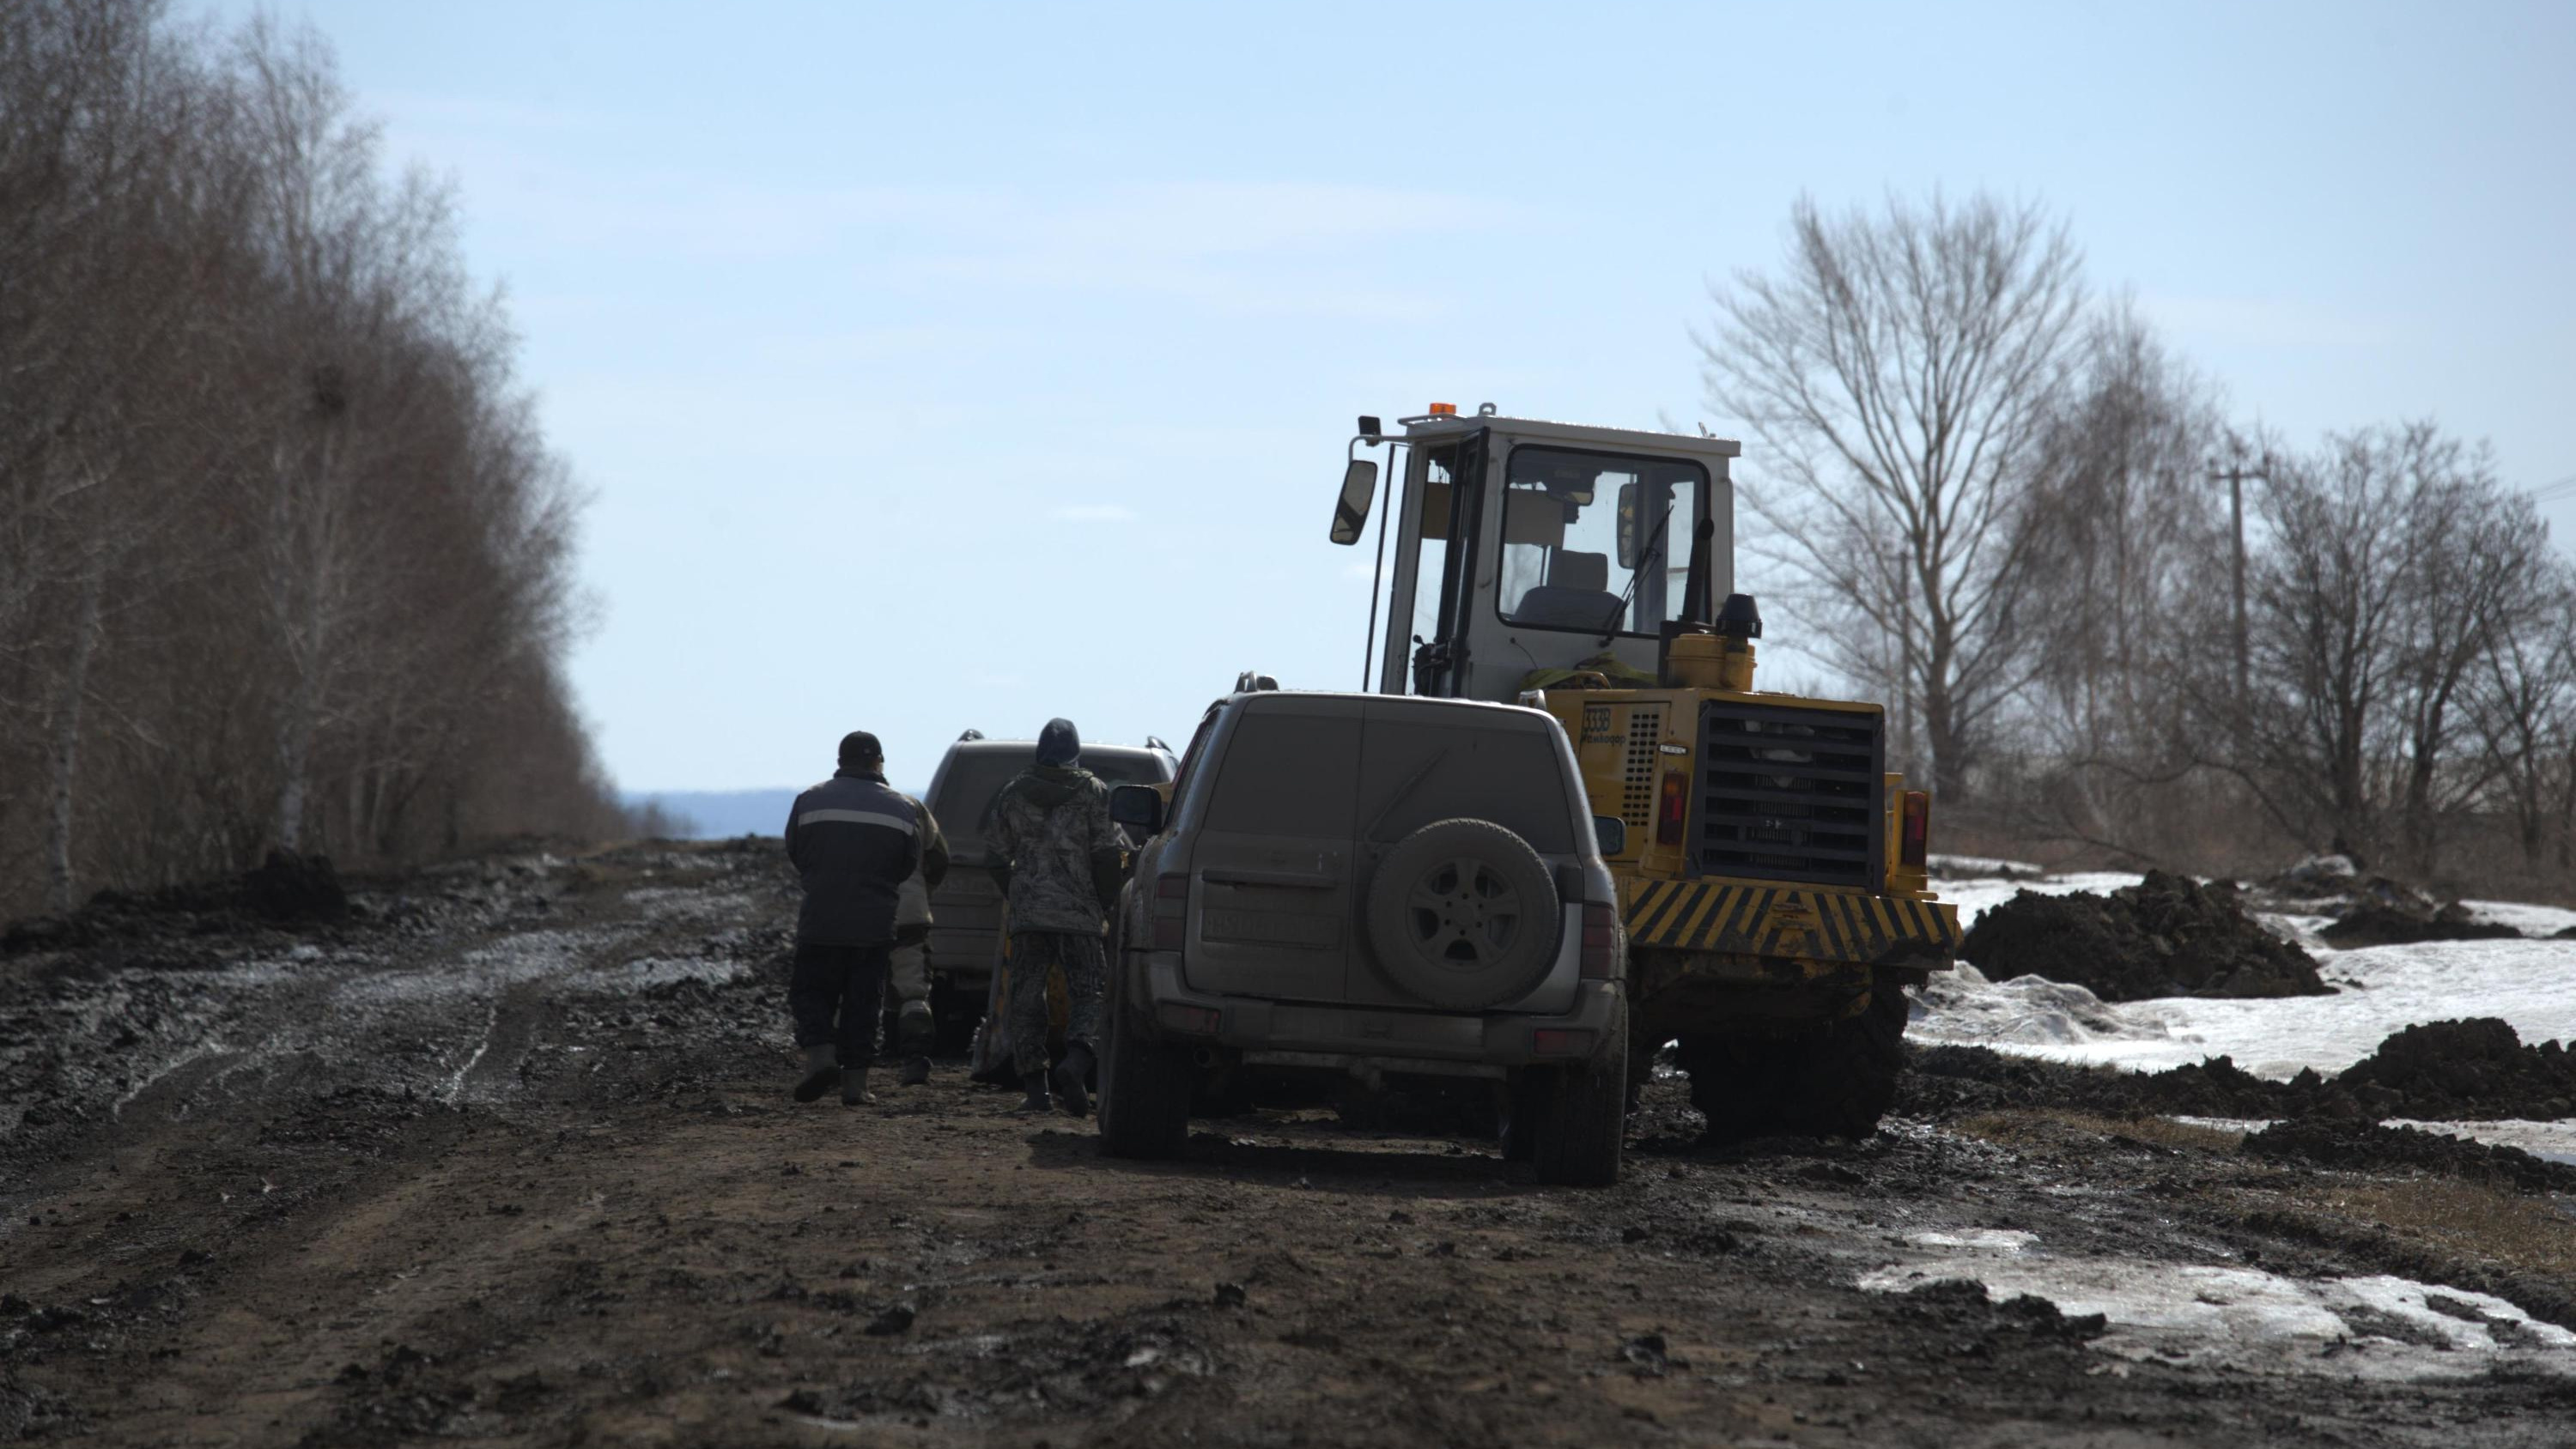 Администрация района отчиталась о ремонте дороги к новосибирскому селу: видео с места работ привело к скандалу